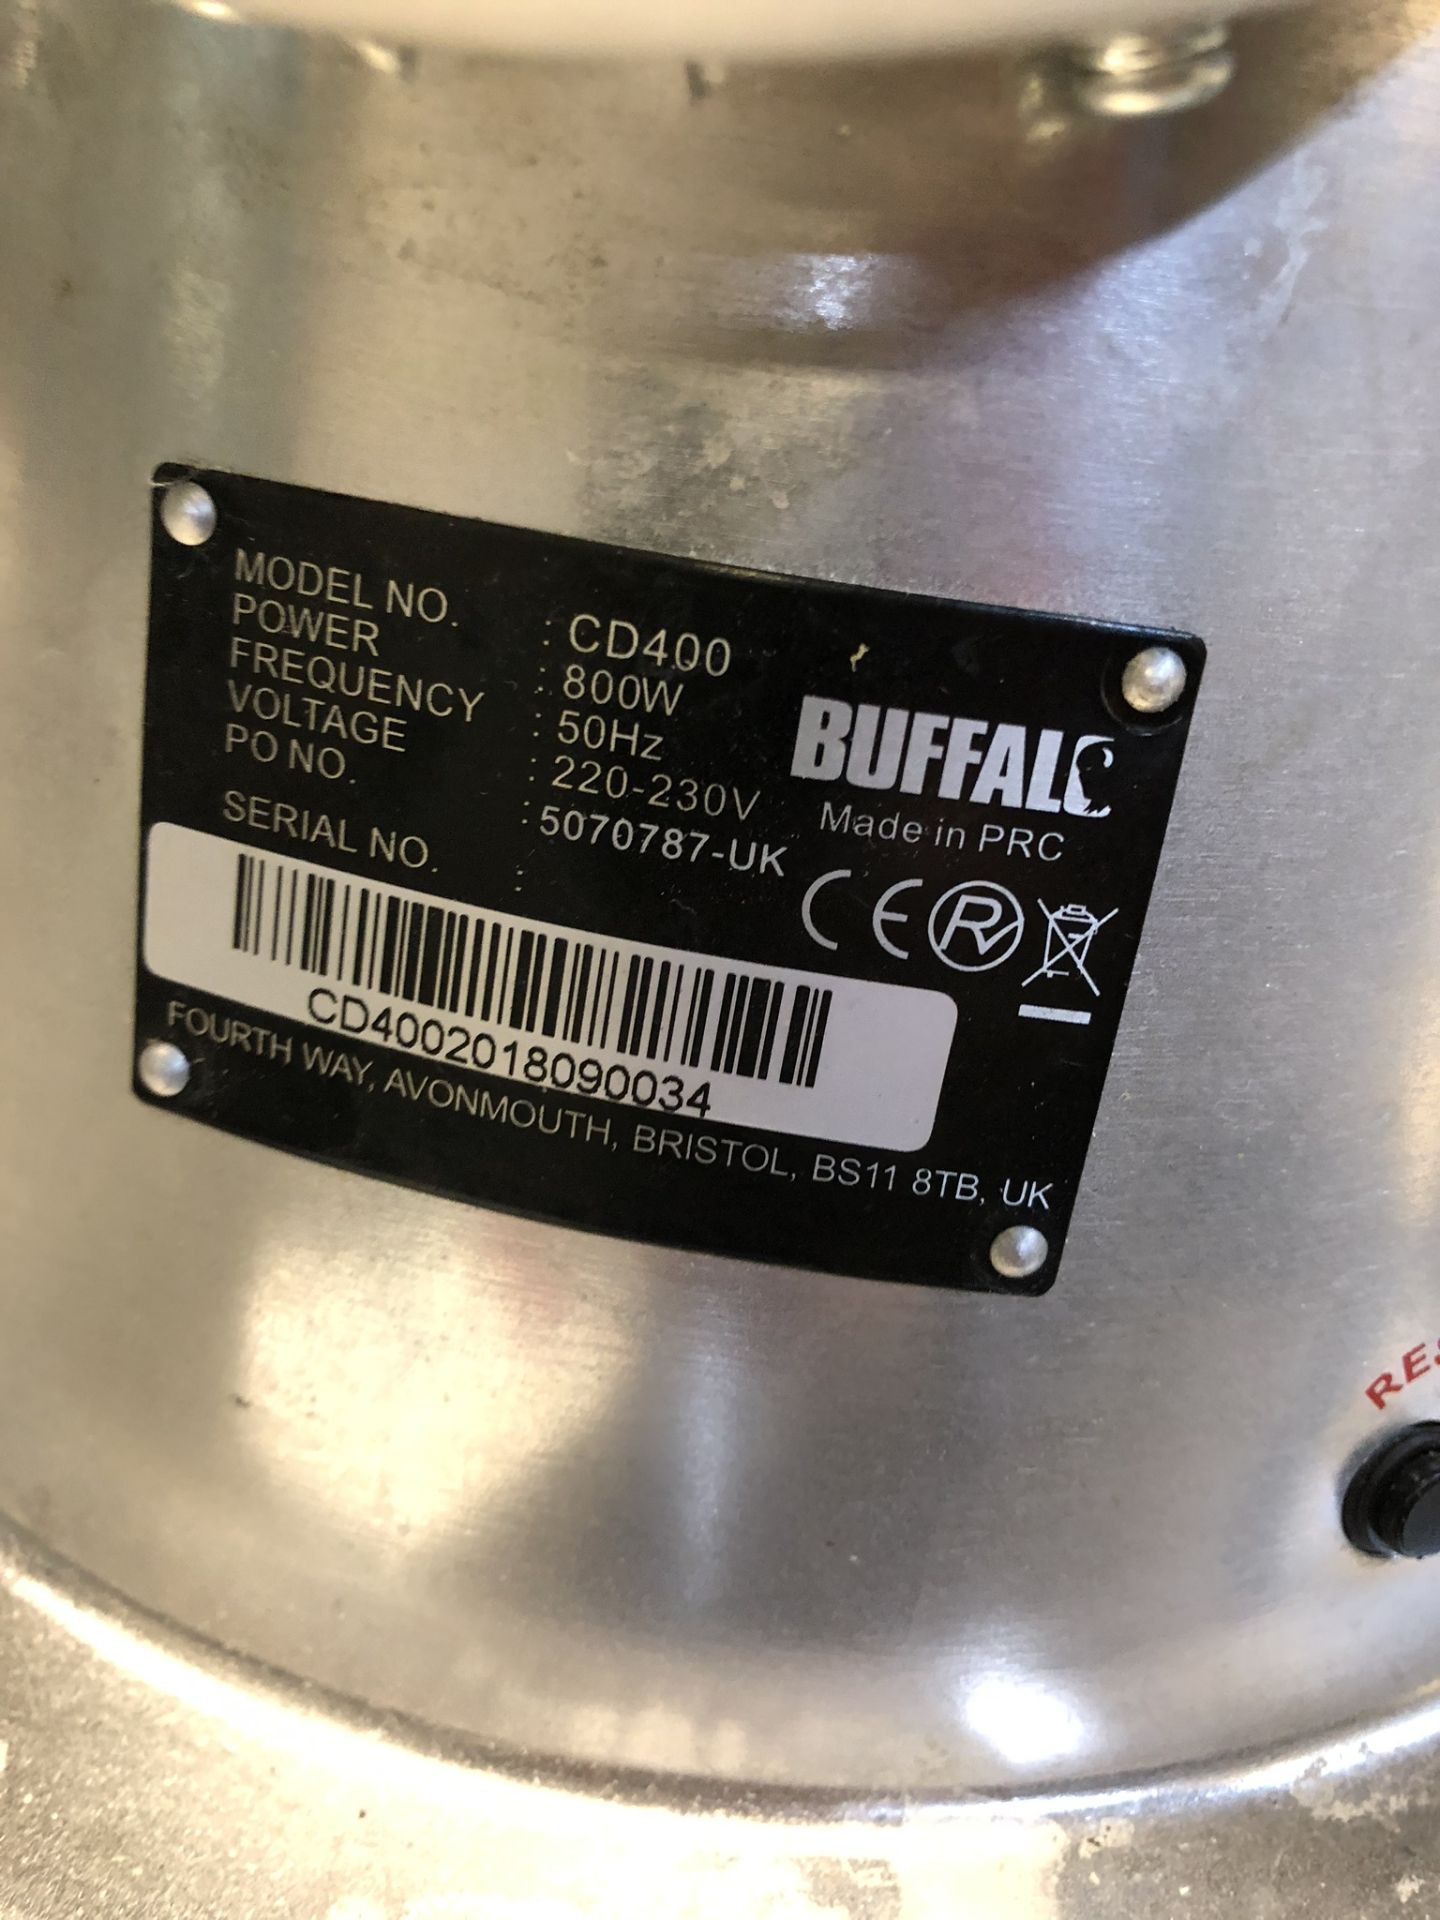 Buffalo CD400 Heavy Duty Meat Mincer - Image 3 of 3